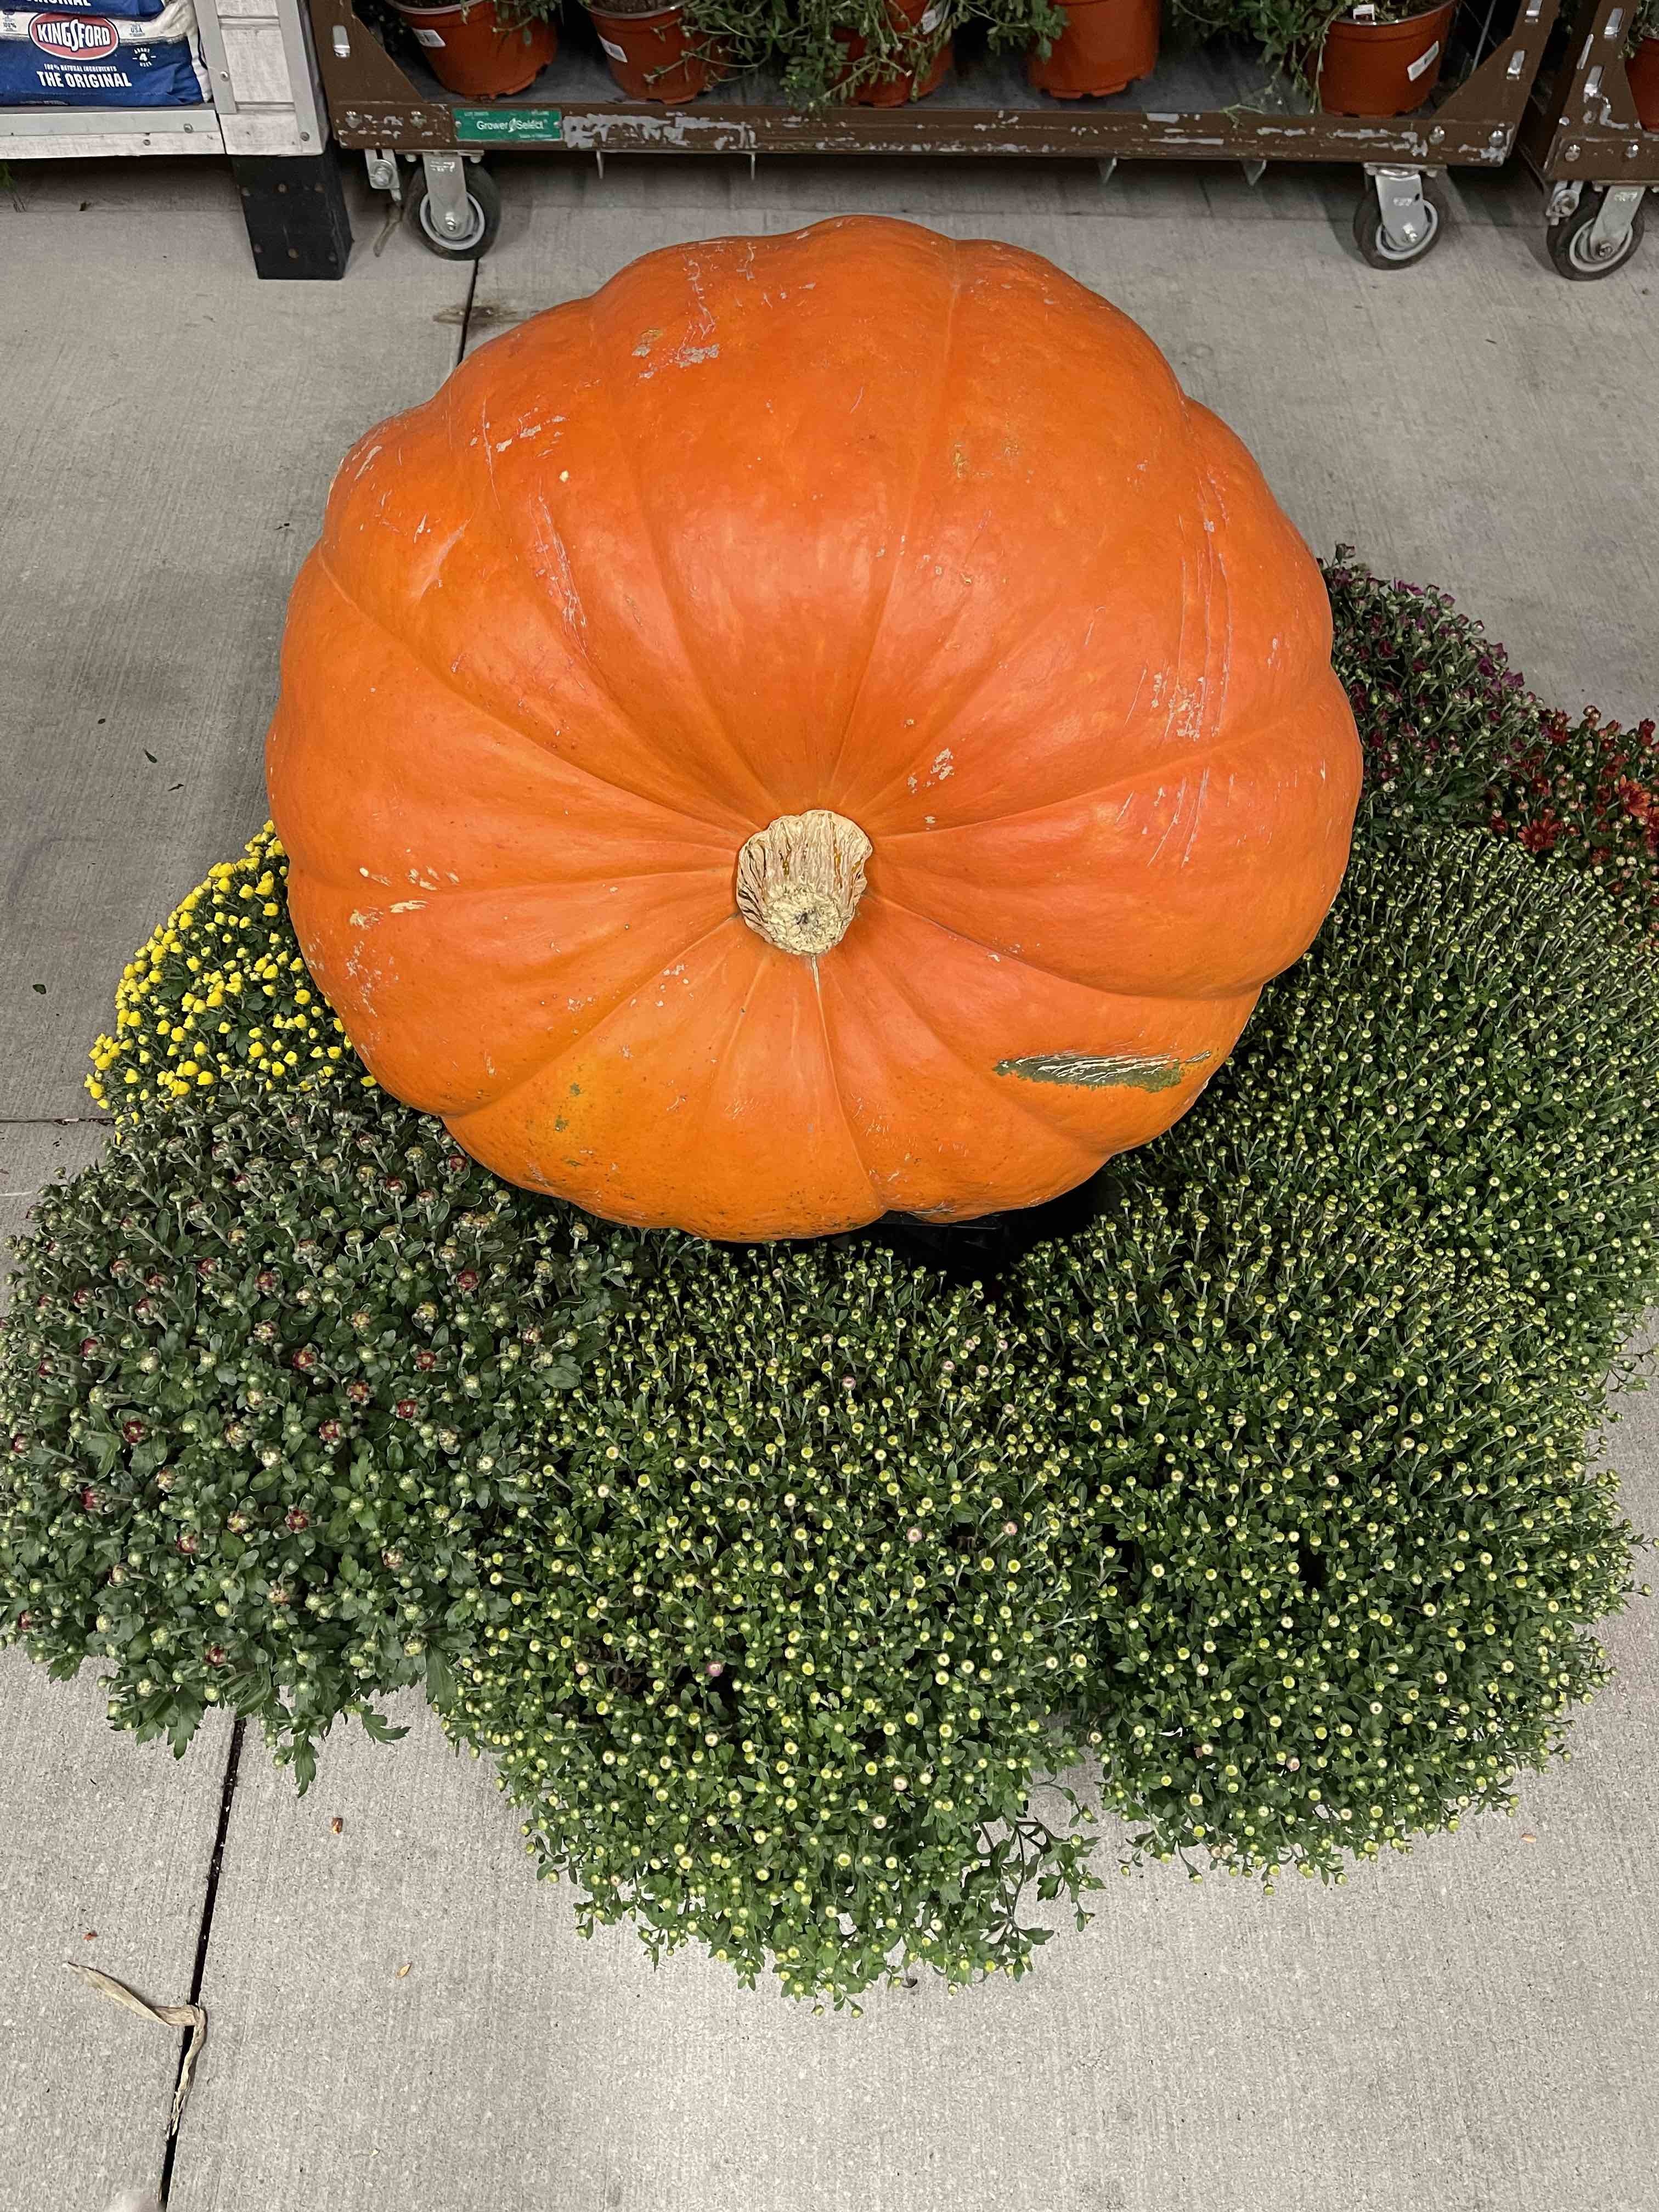 GiantPumpkin.jpg